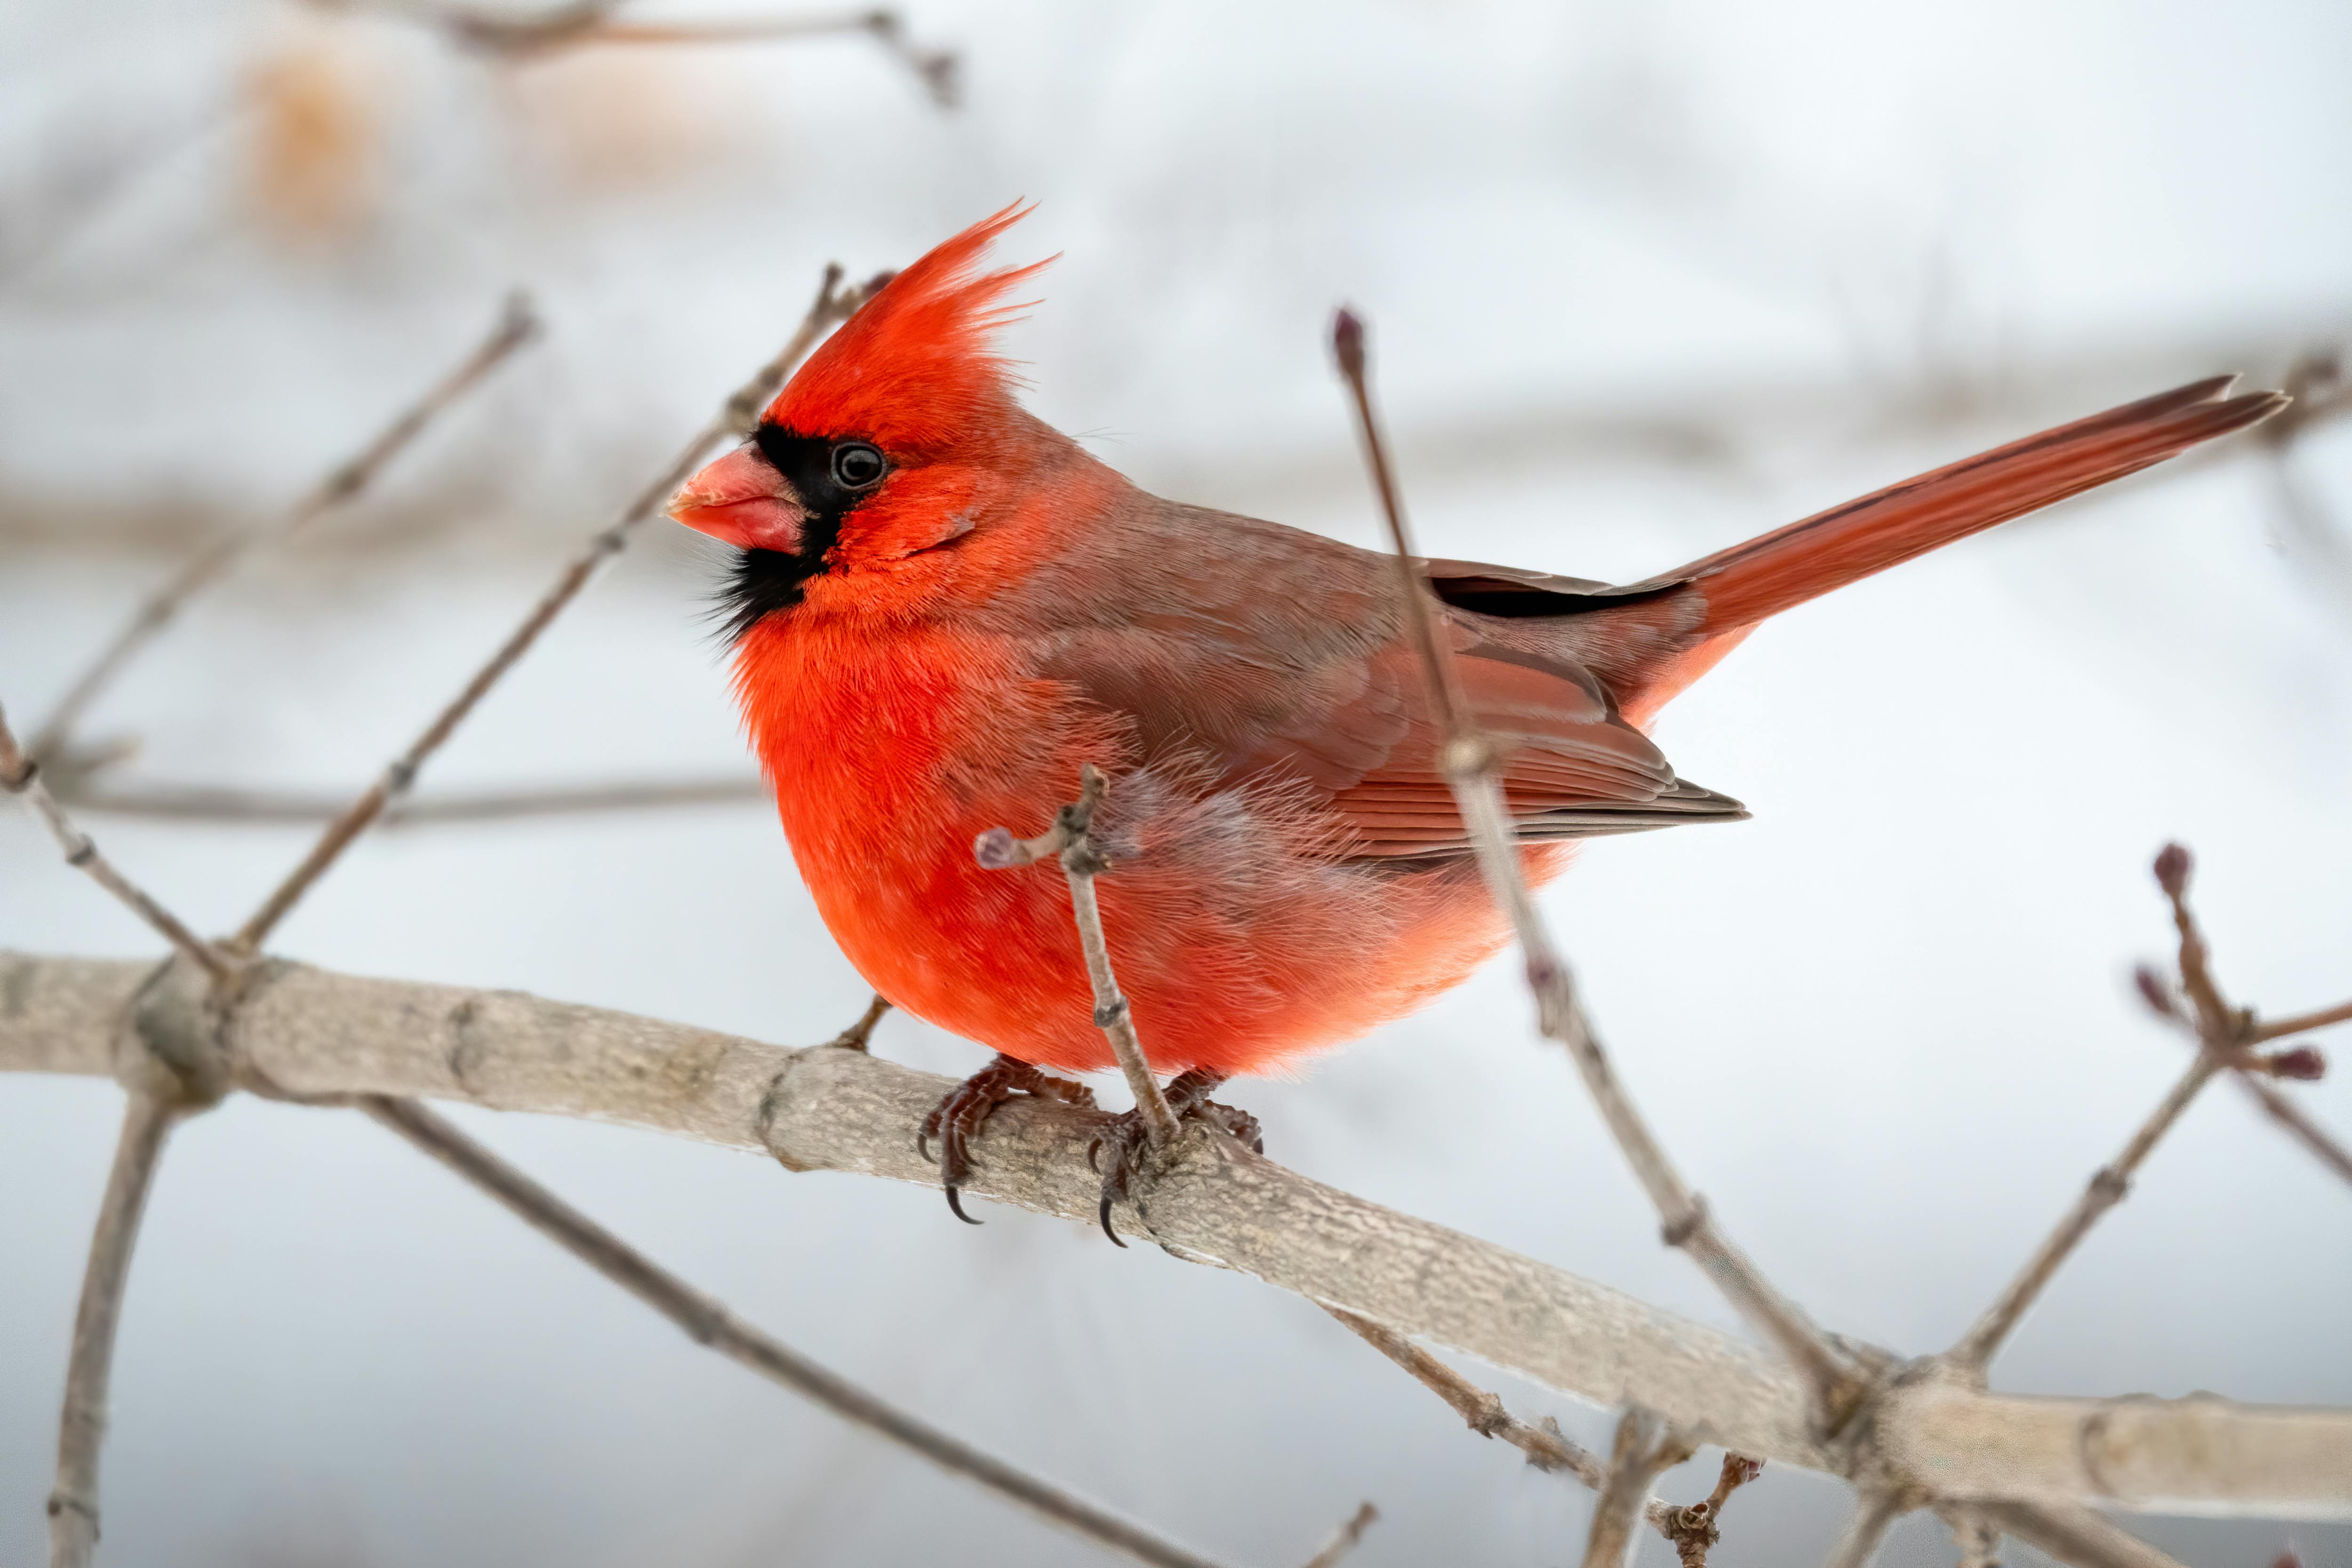 "Maintaining Cardinal Bird House"